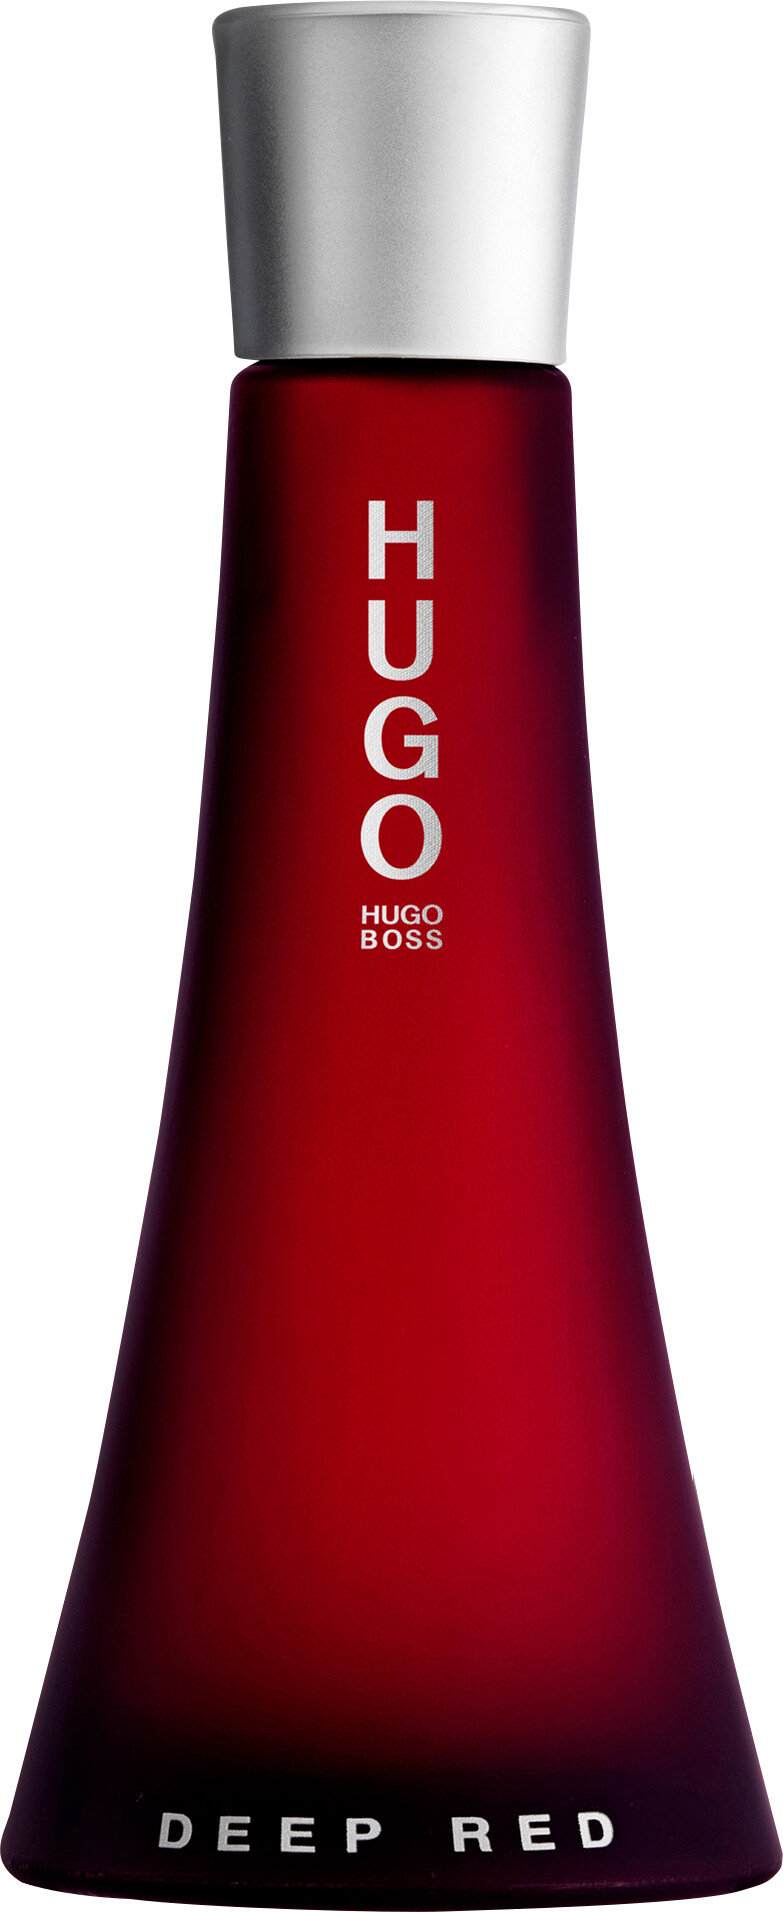 HUGO BOSS HUGO Deep Red Eau de Parfum Spray 90ml